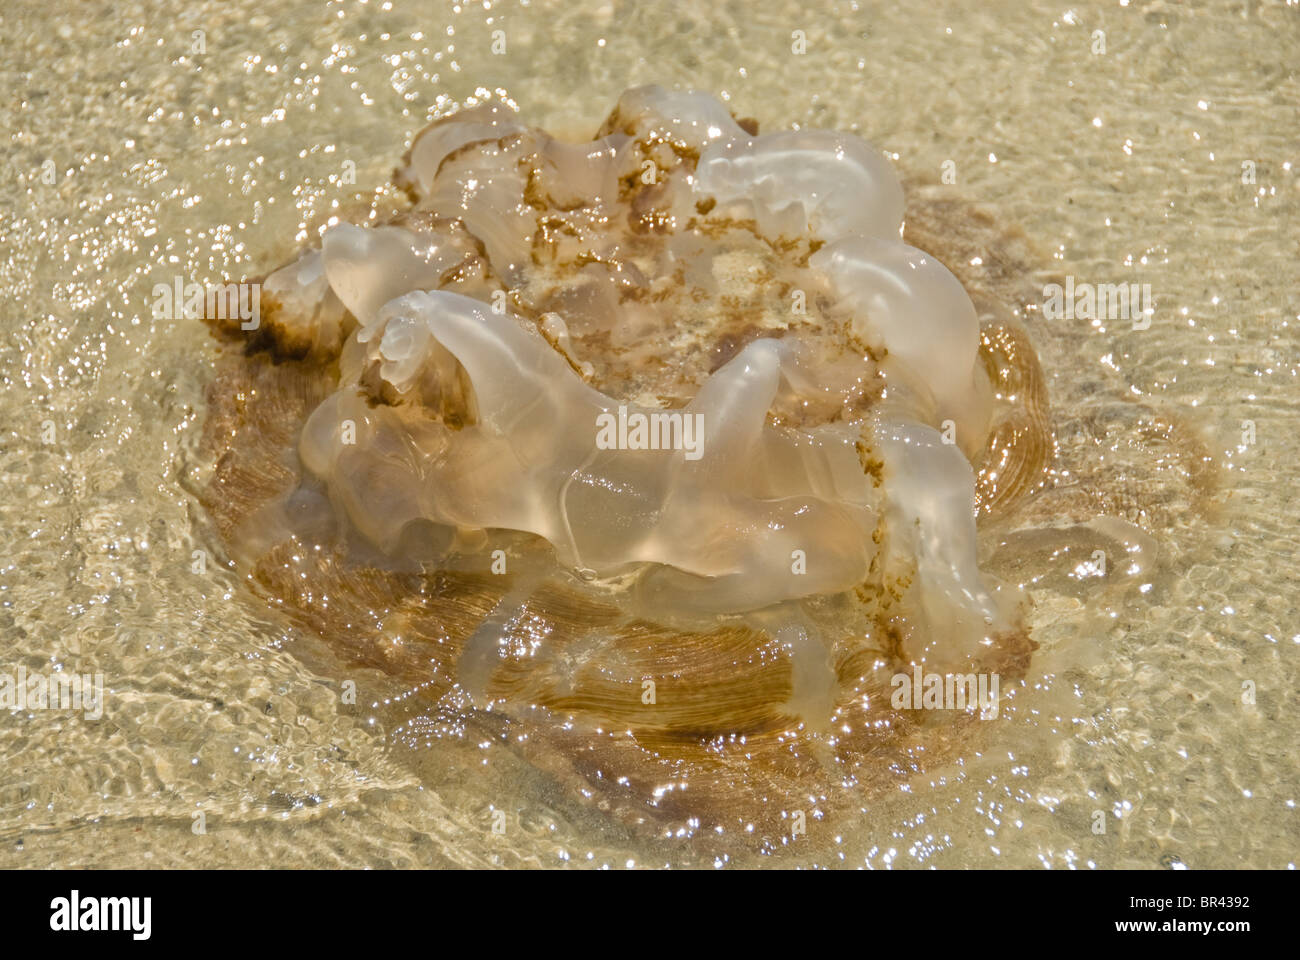 Jellyfish on beach of Ko Samet, Thailand Stock Photo